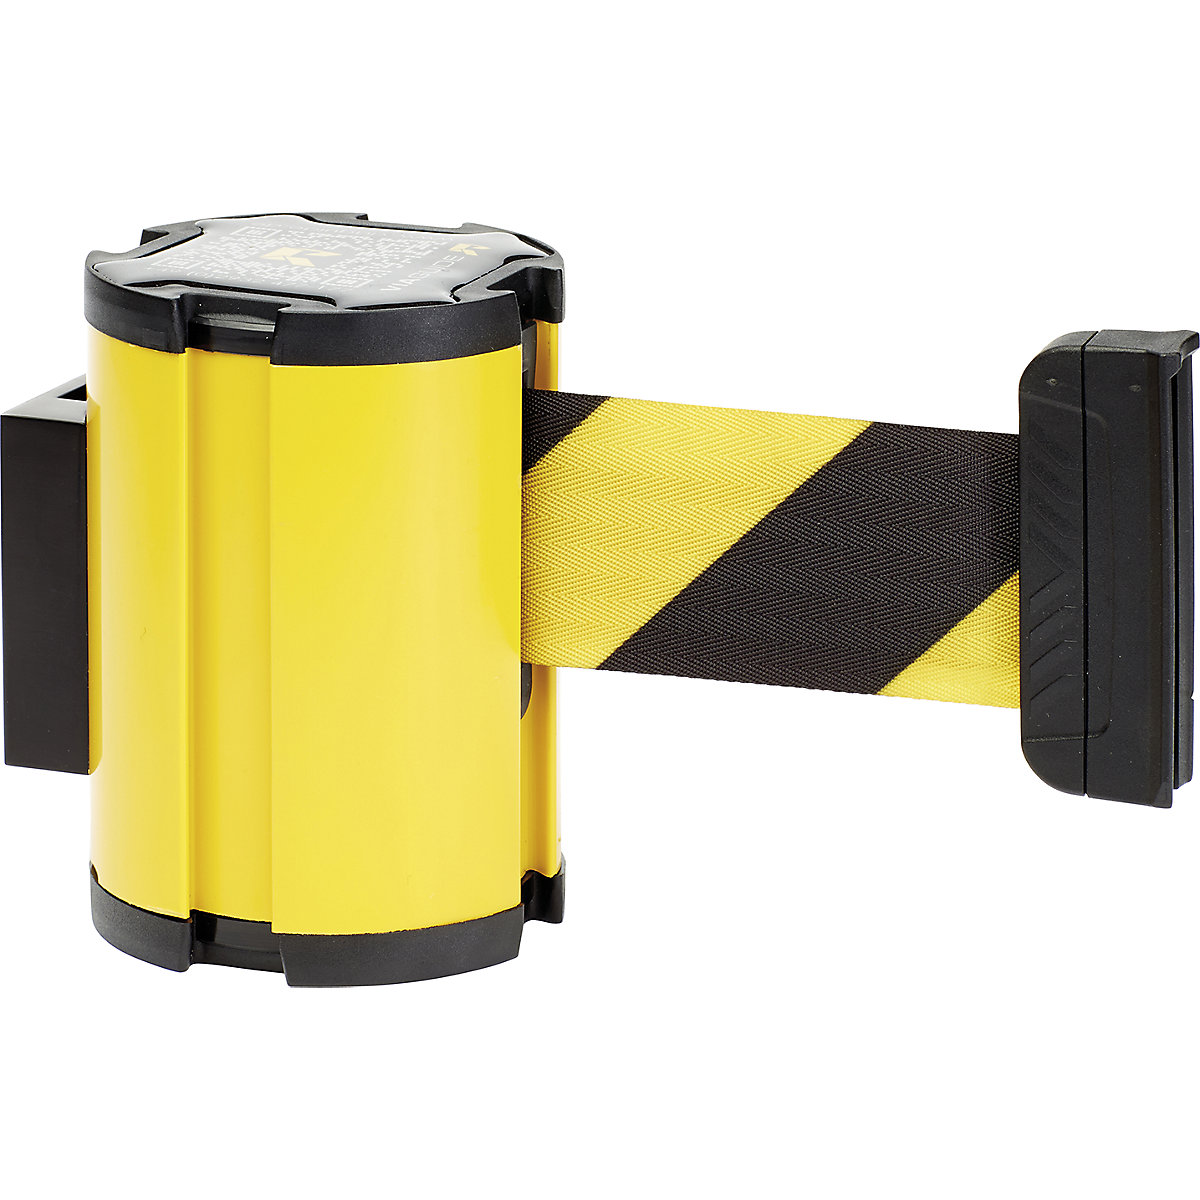 Cassete de cinta, extração máx. da cinta 3000 mm, cassete amarela, cinta amarela/preta-4